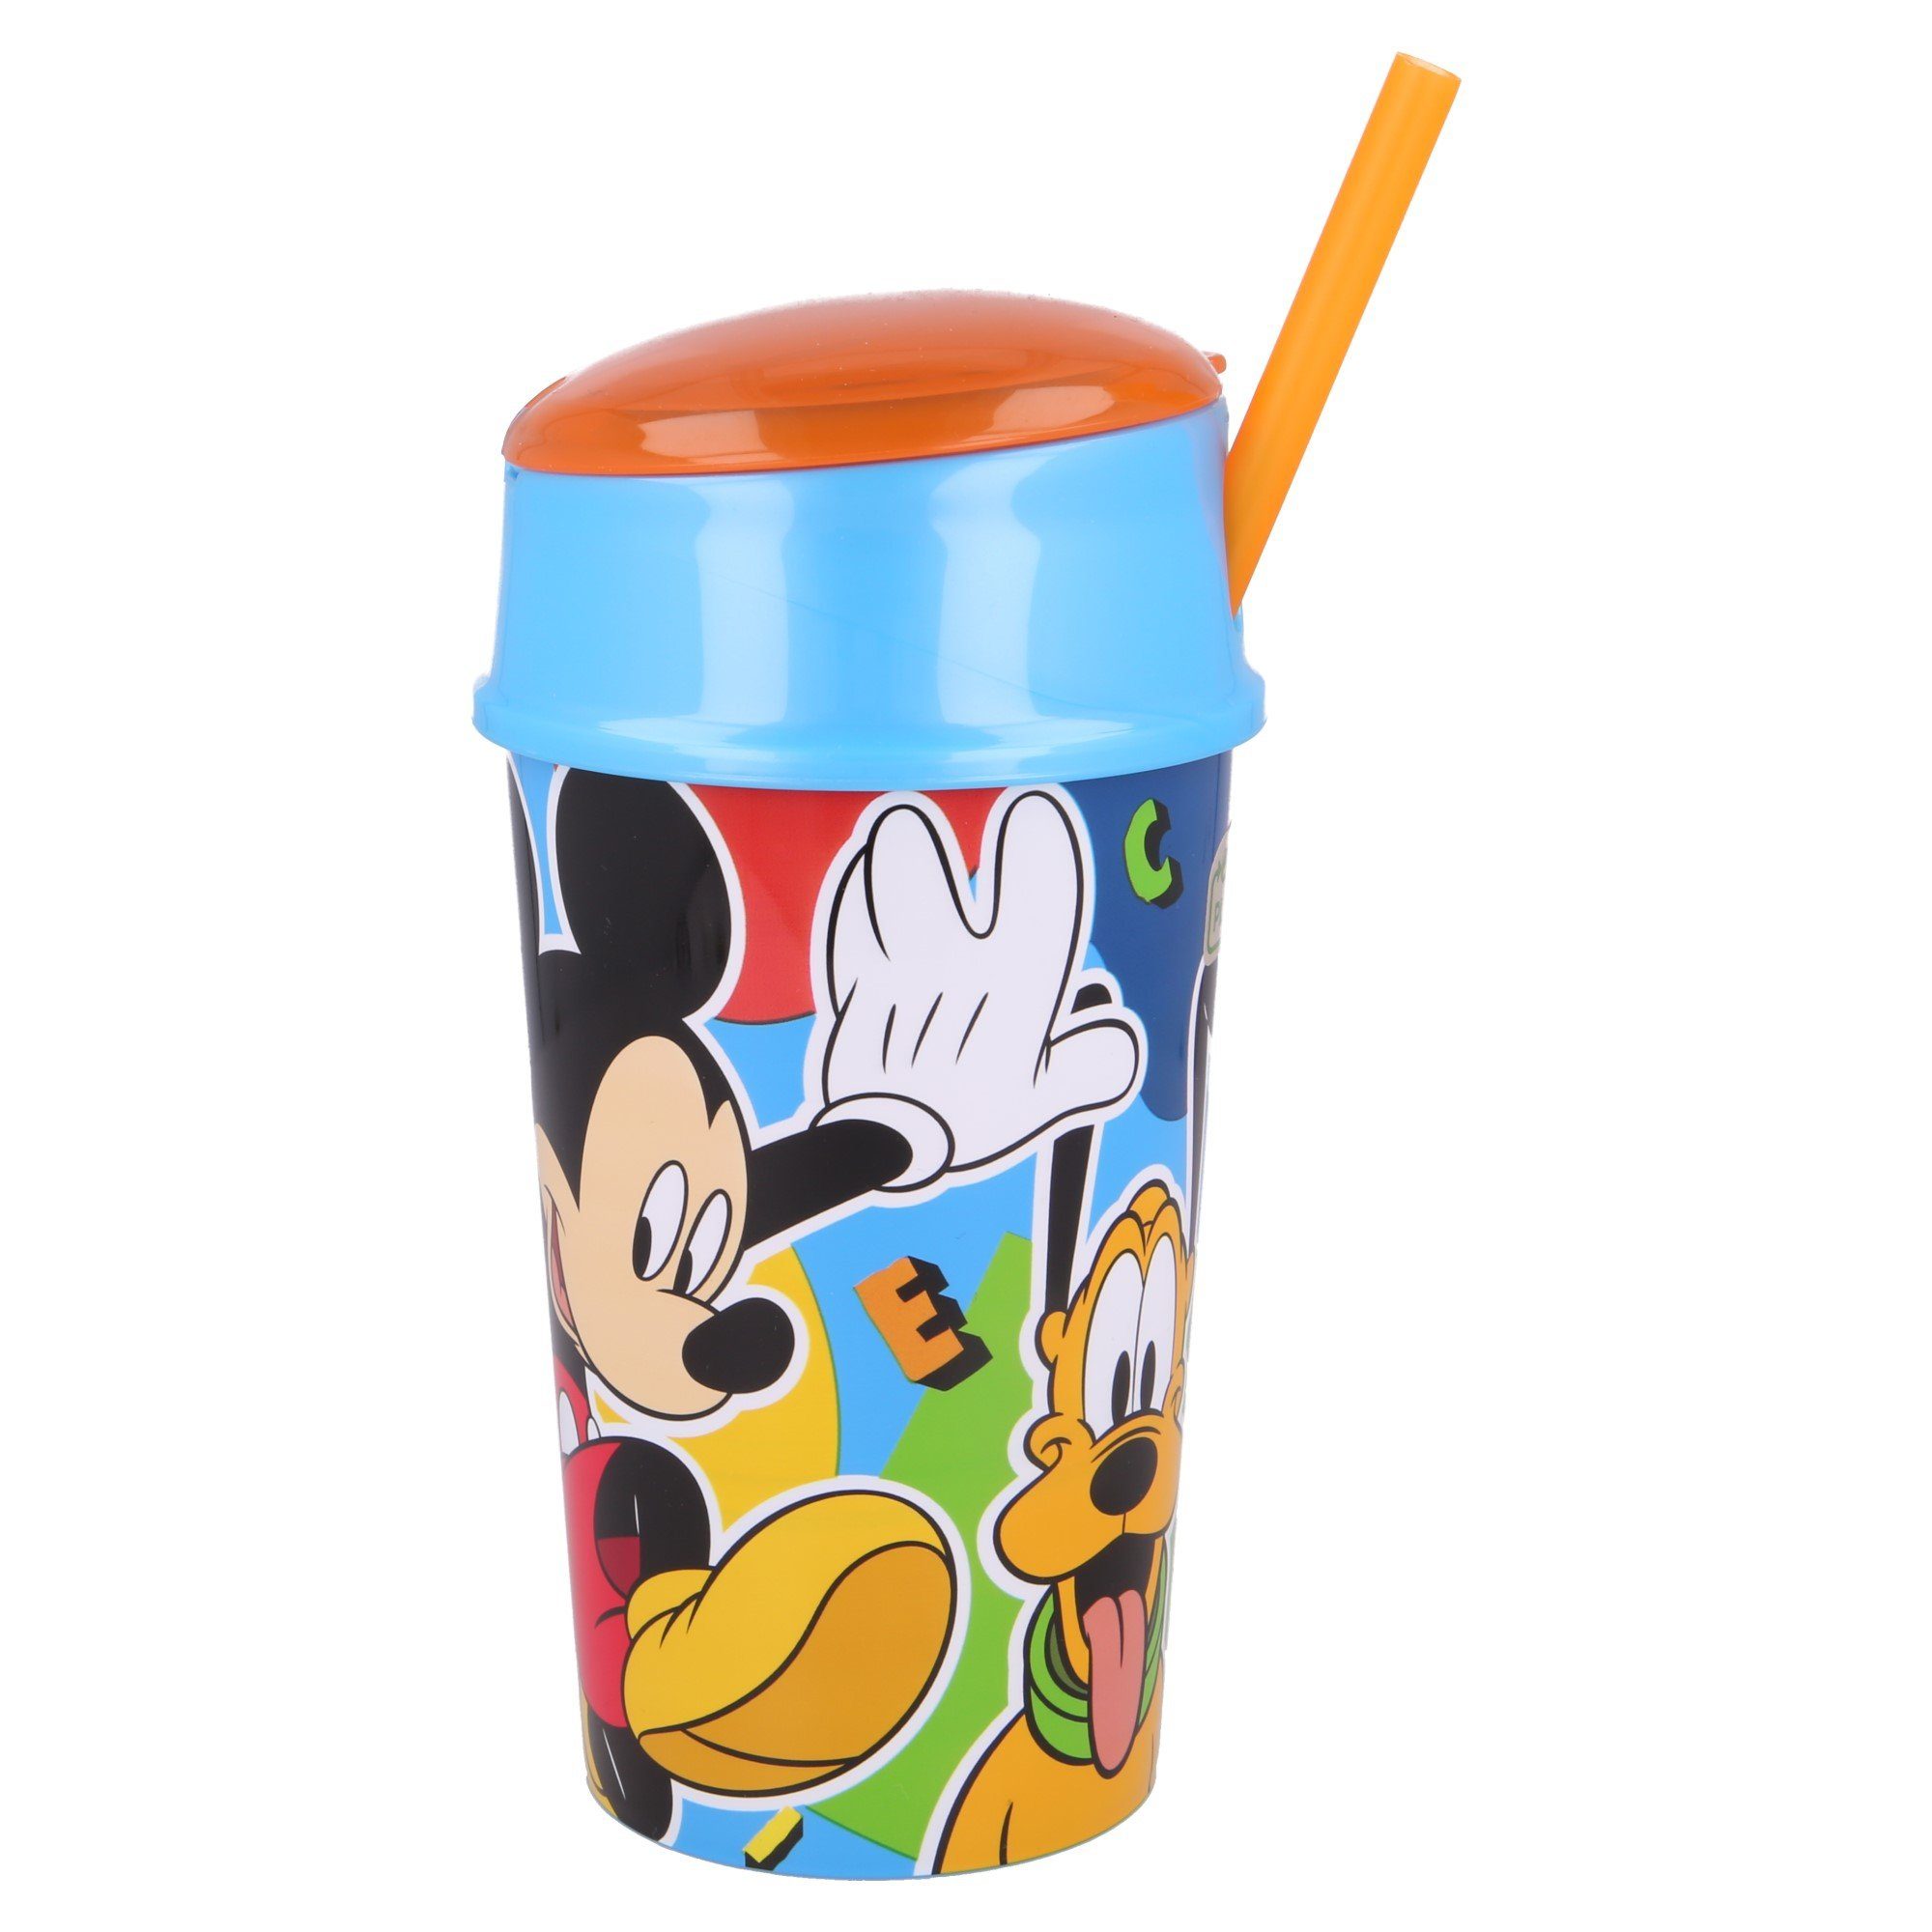 Disney Mickey Mouse Kinderbecher Mickey Maus, Kunststoff, 2 in 1 Becher 400 ml mit integriertem Snackfach & Trinkhalm BPA frei